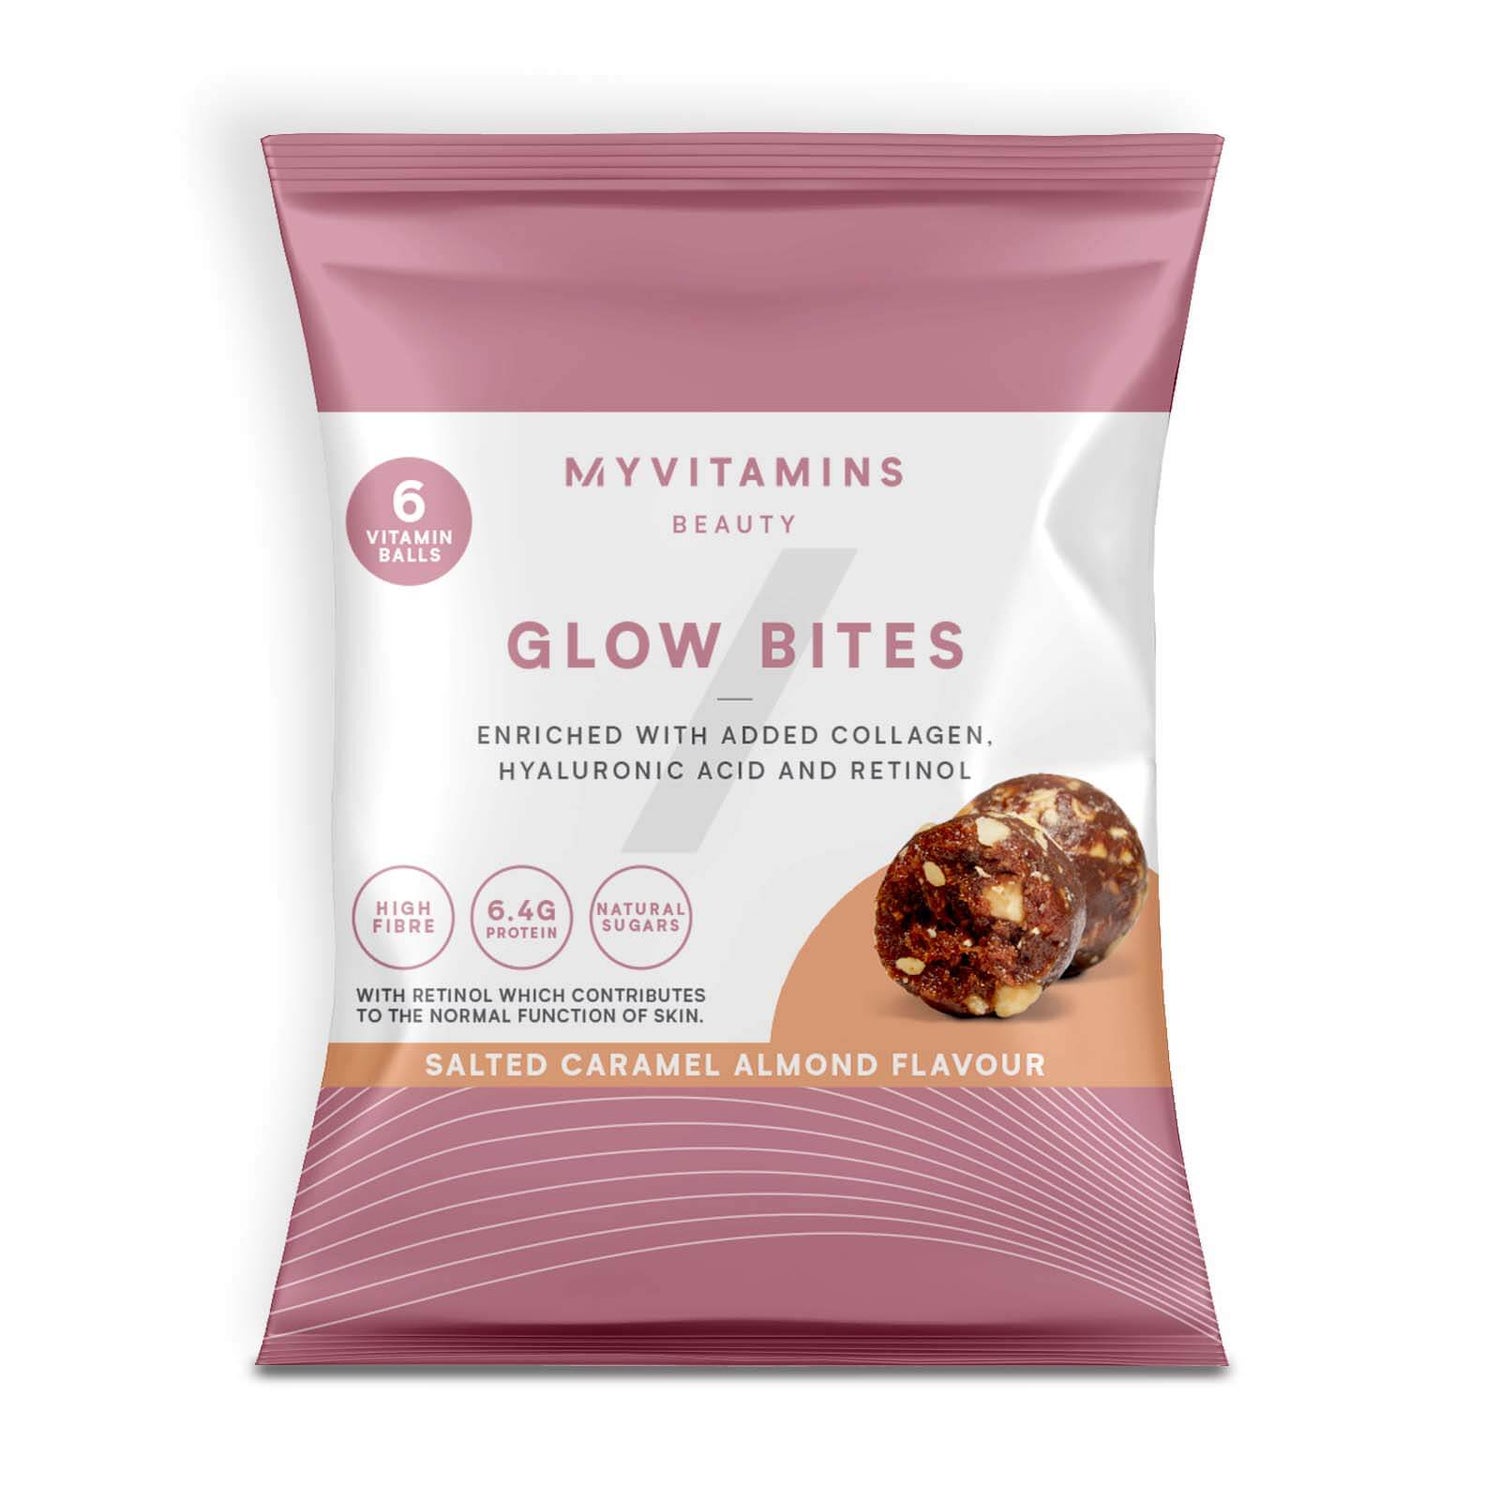 Myvitamins Glow Bites - 45g - Salted Caramel Almond